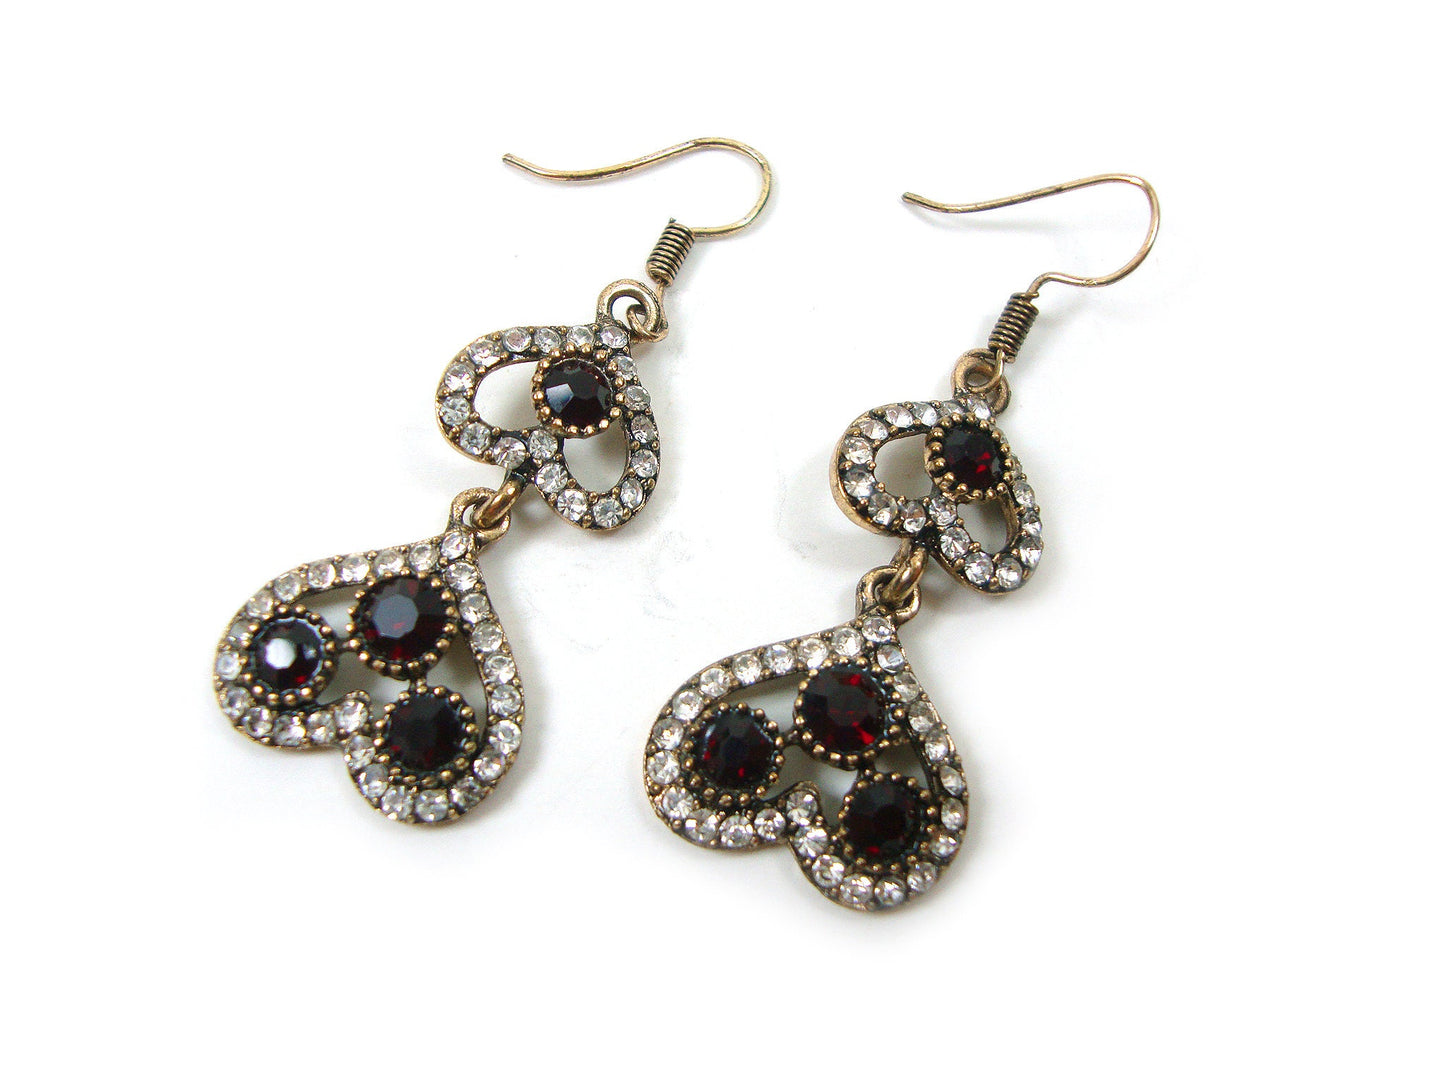 Byzantine Earrings, Modern Style Dark Red Crystal Stones Dangle Heart Shape Earrings, Ethnic Antique Earrings, Greek Turkish Earrings Dangle